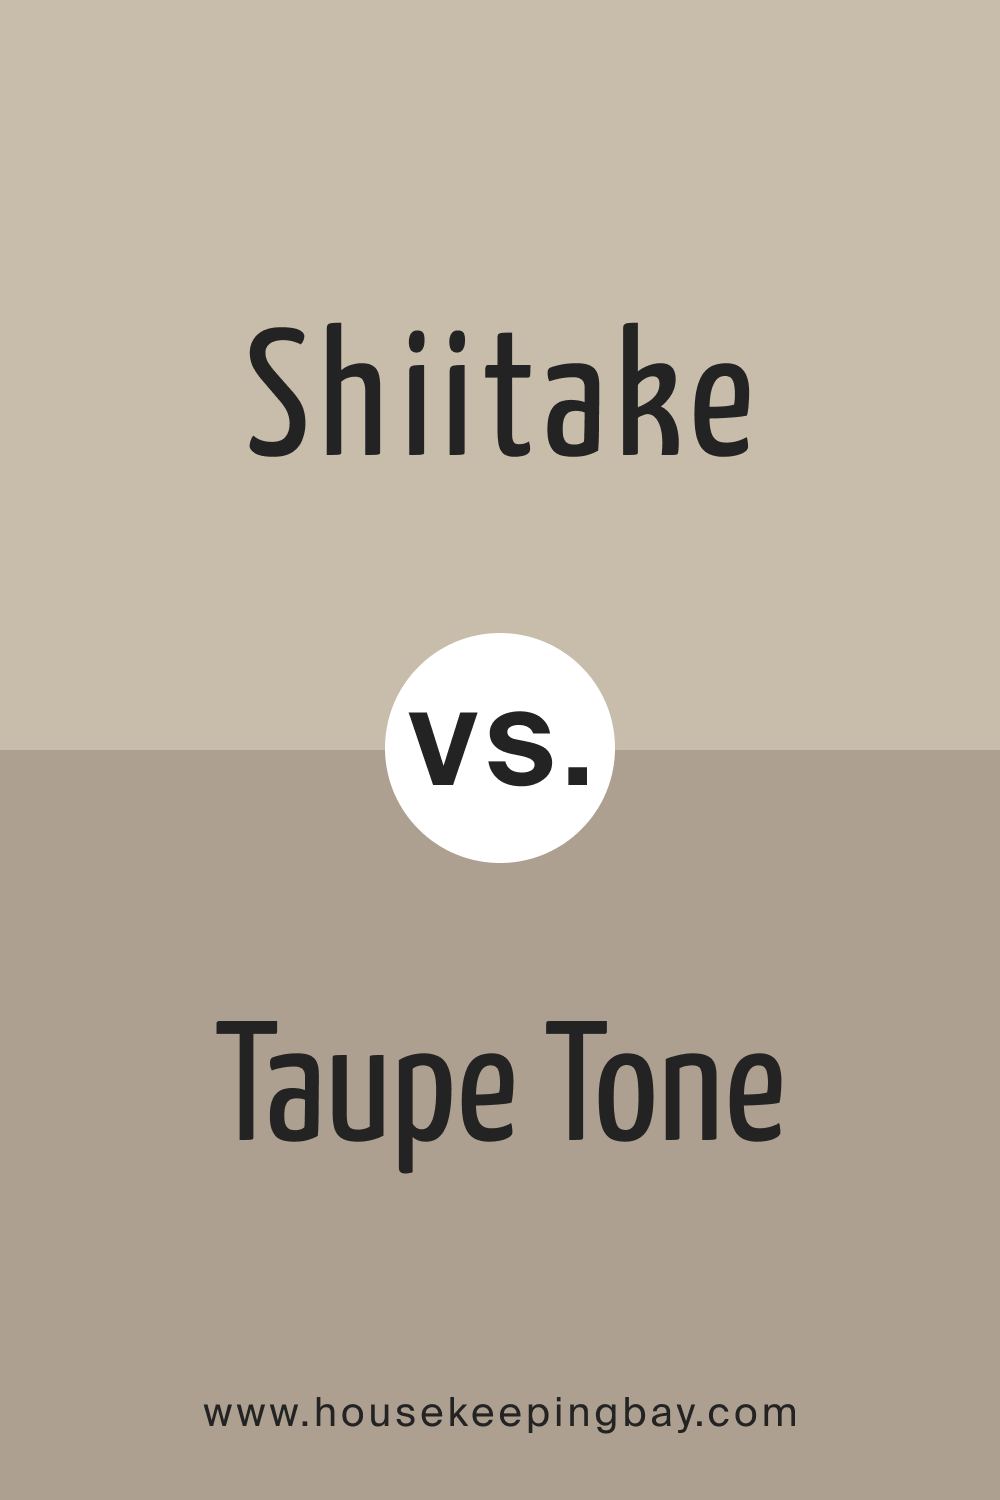 Shiitake vs. Taupe Tone